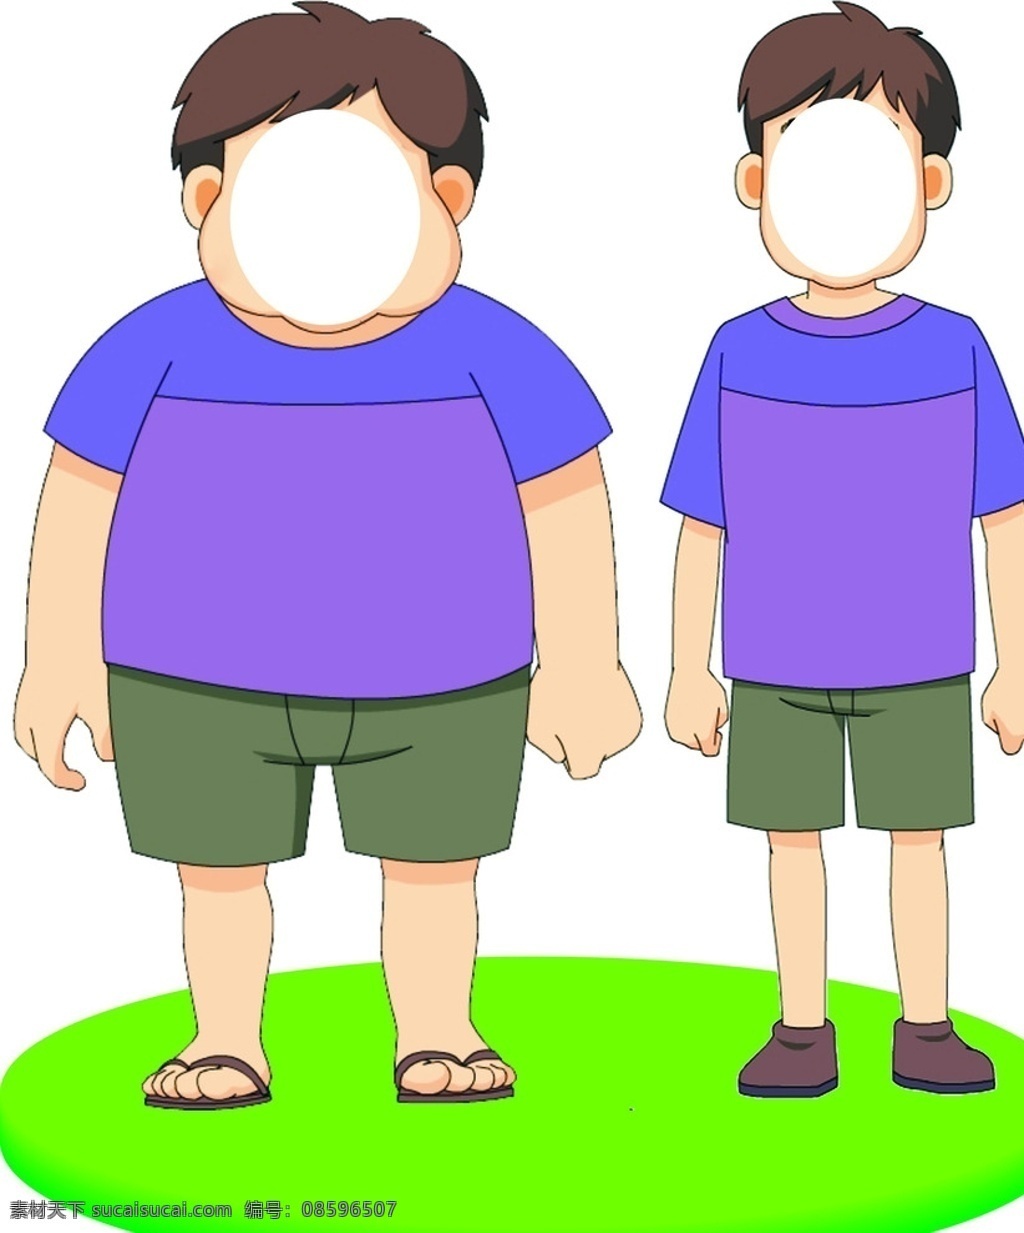 减肥 胖 瘦 胖瘦人 卡通 卡通人物